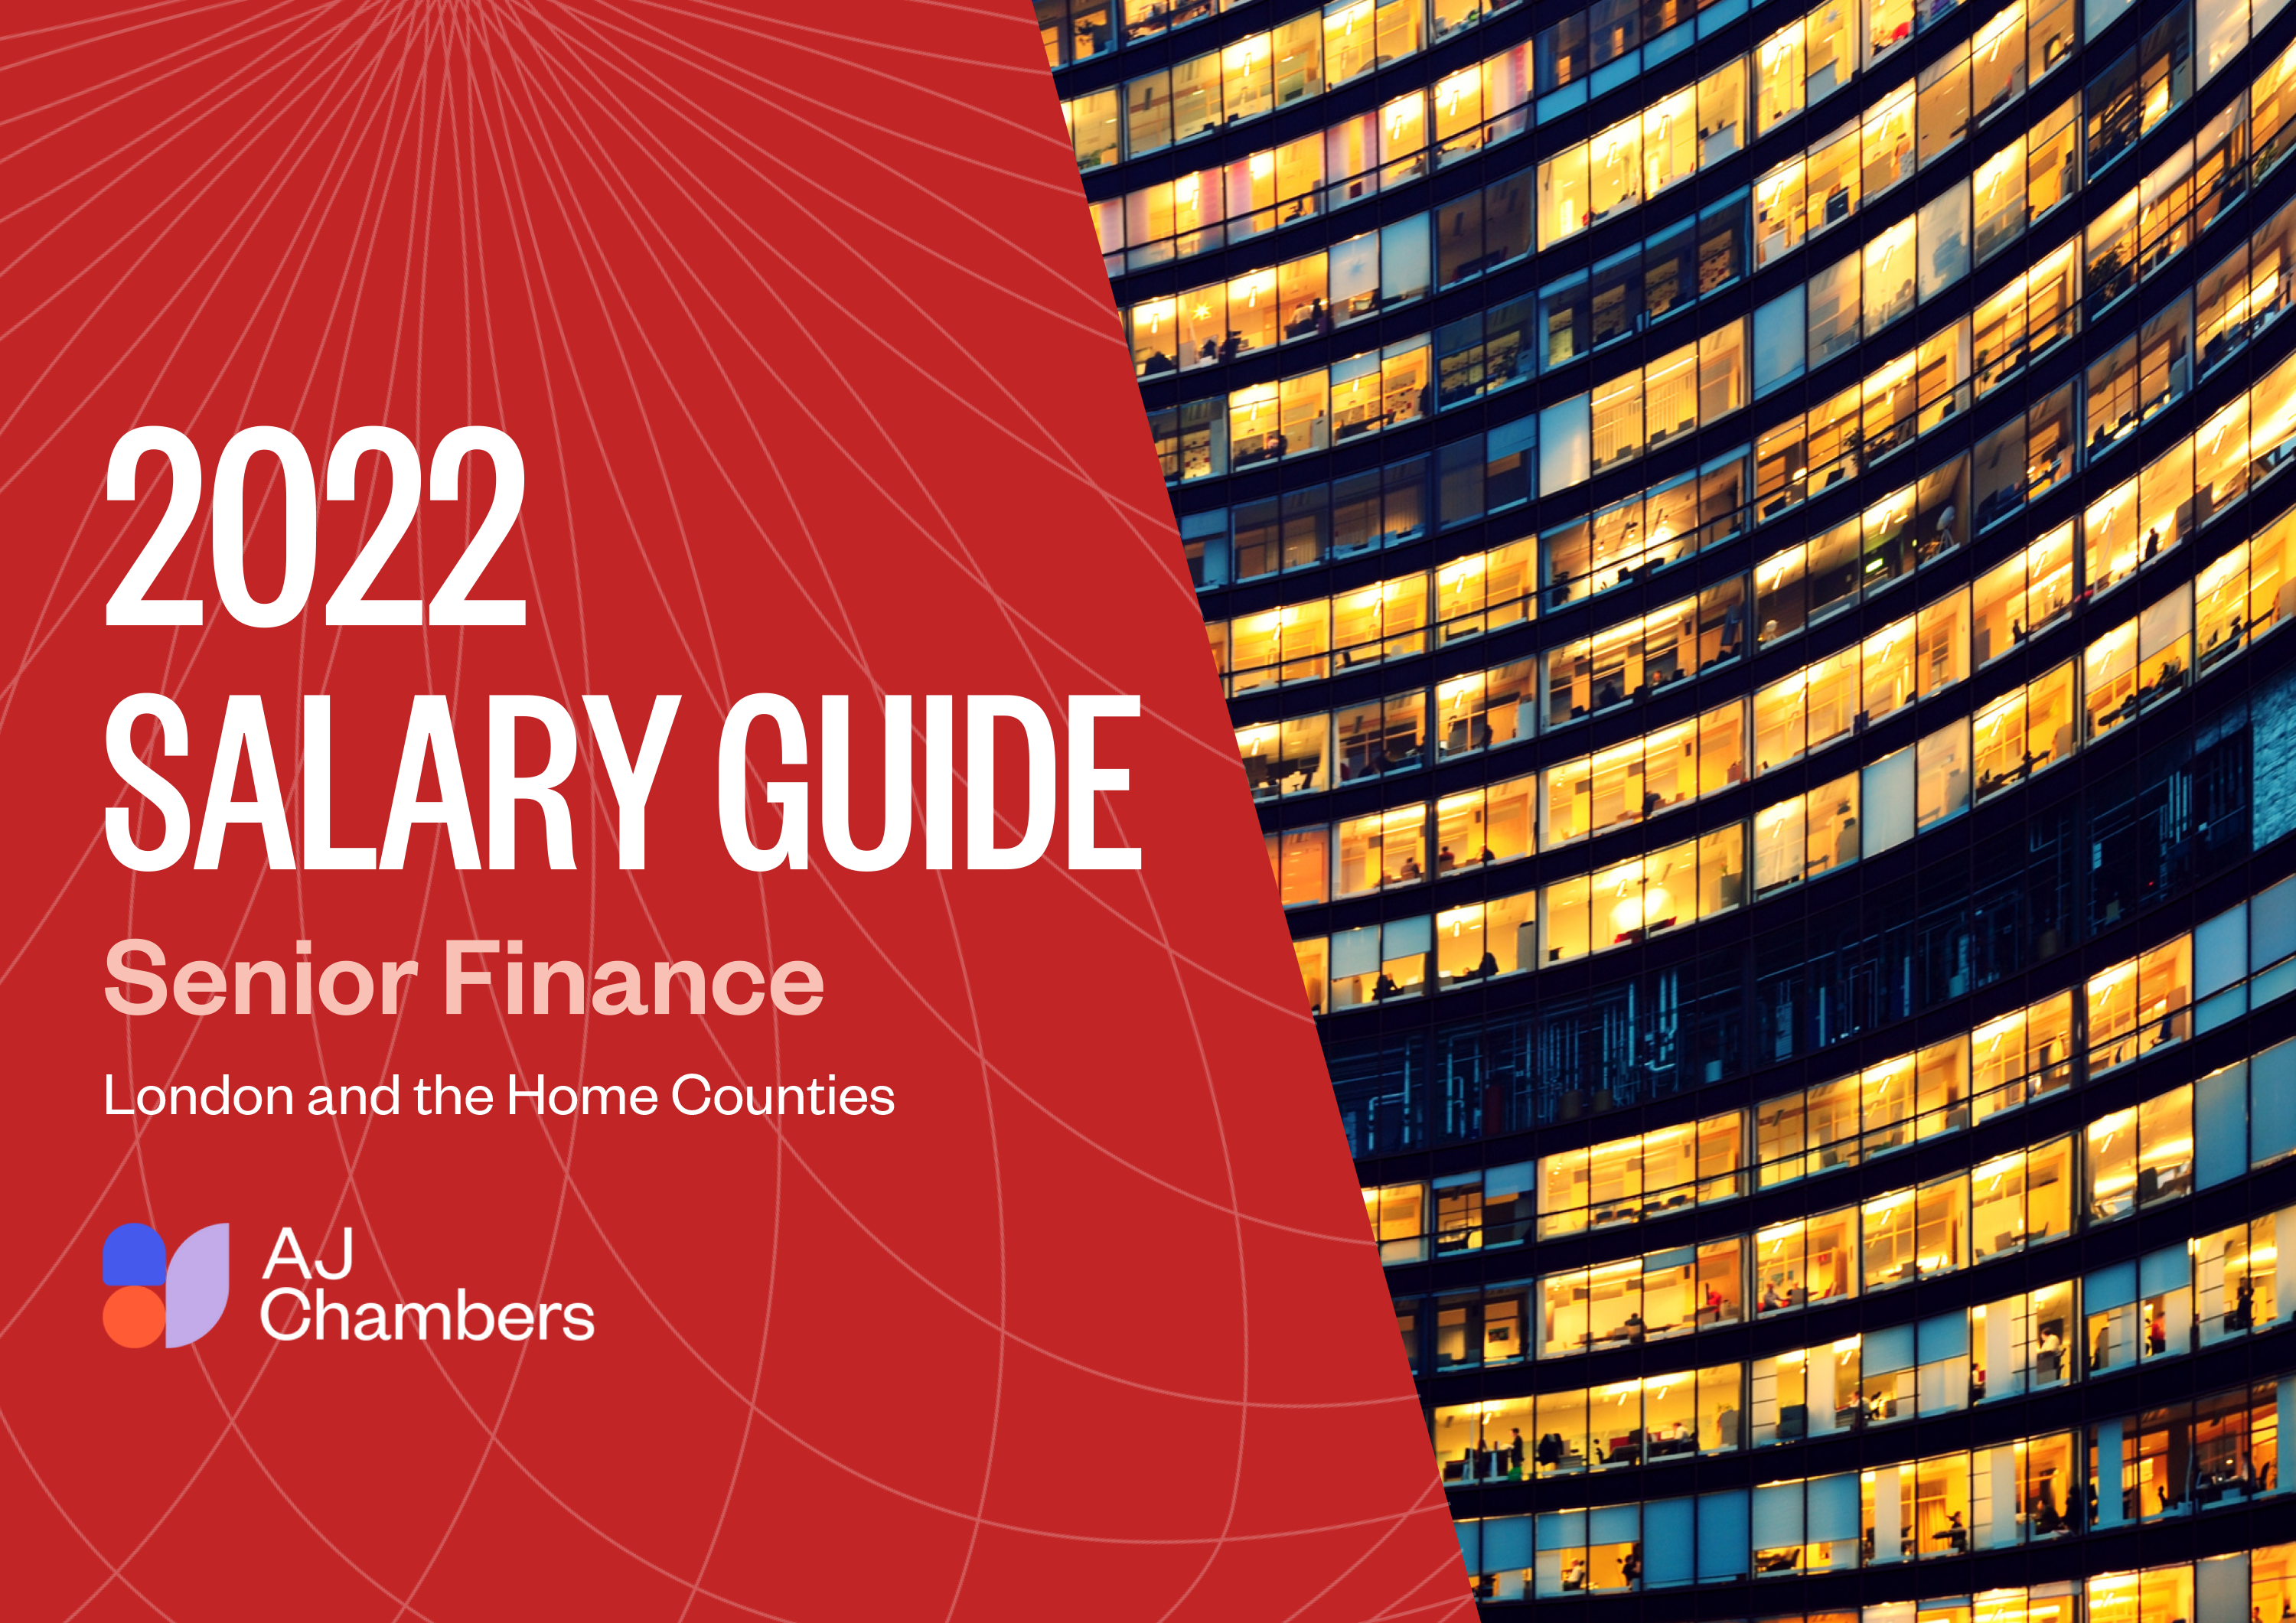 Senior Finance Salary Guide 2022